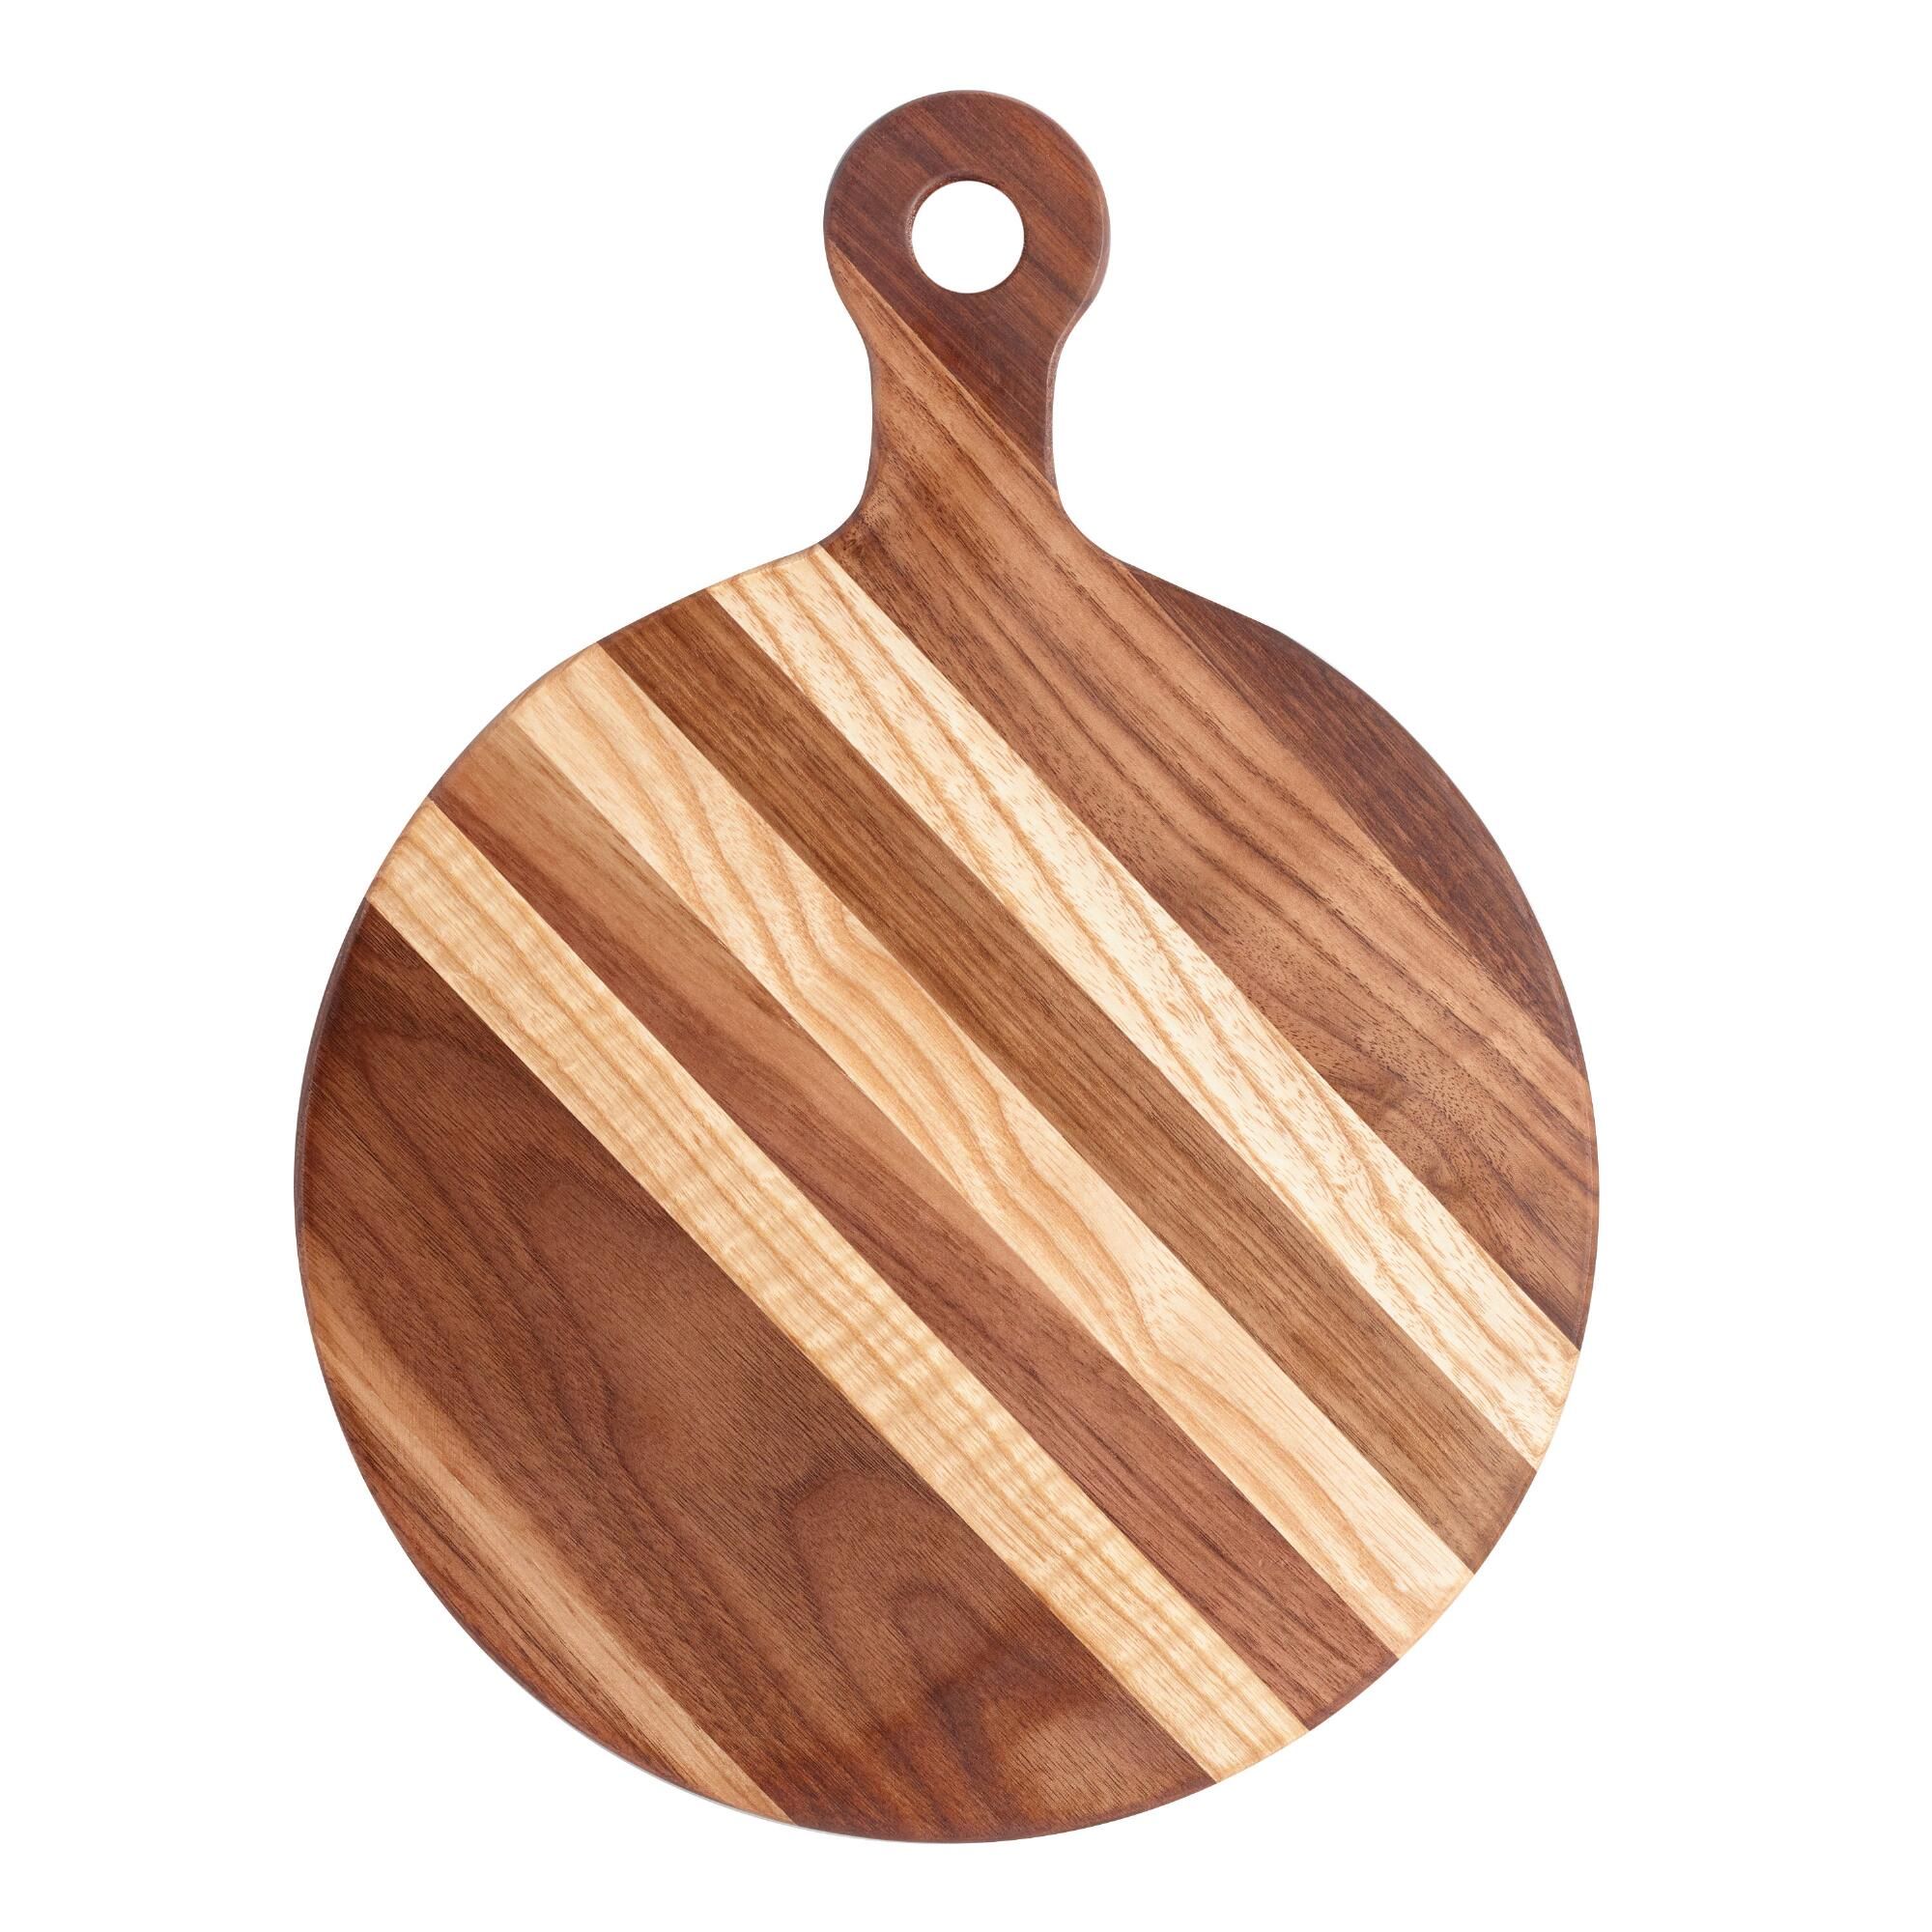 Small Round Walnut Wood Paddle Cutting Board by World Market | World Market